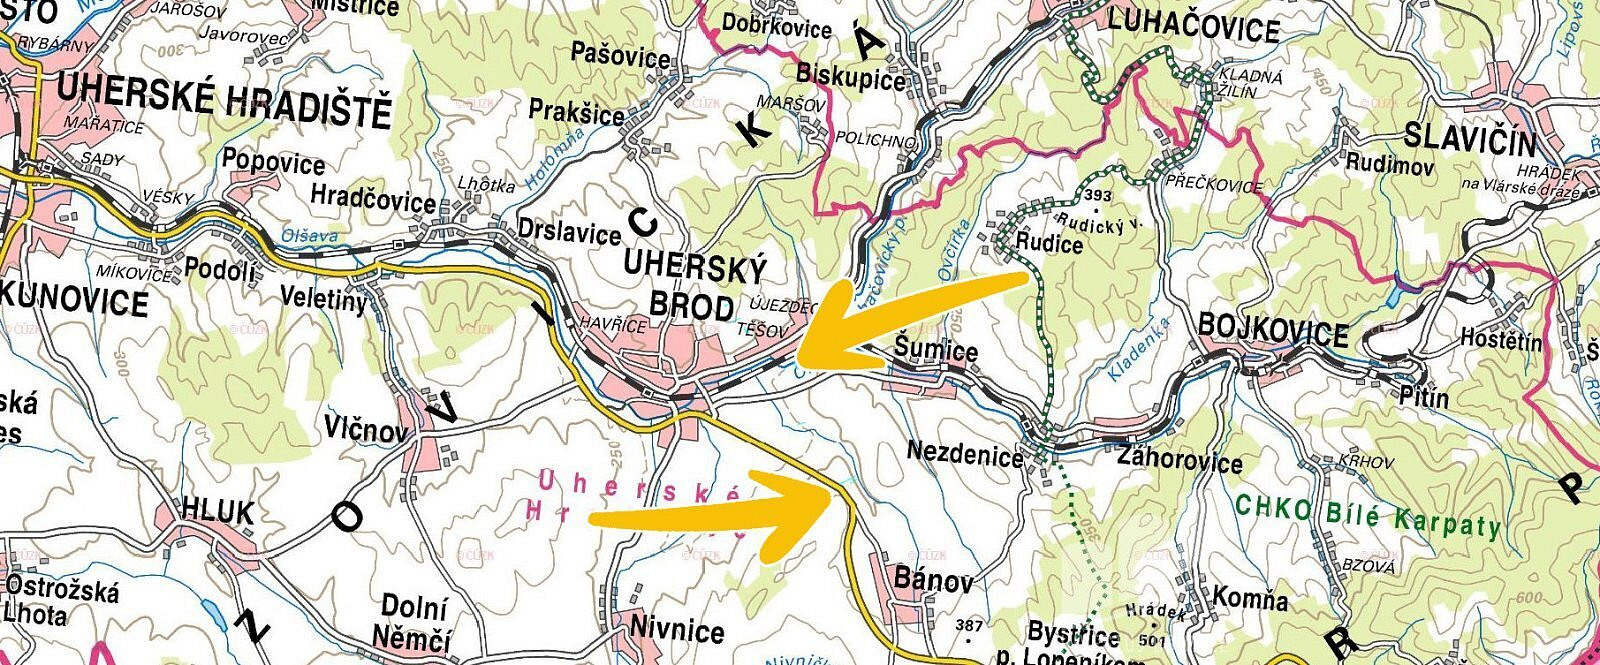 Uherský Brod - Těšov, okres Uherské Hradiště